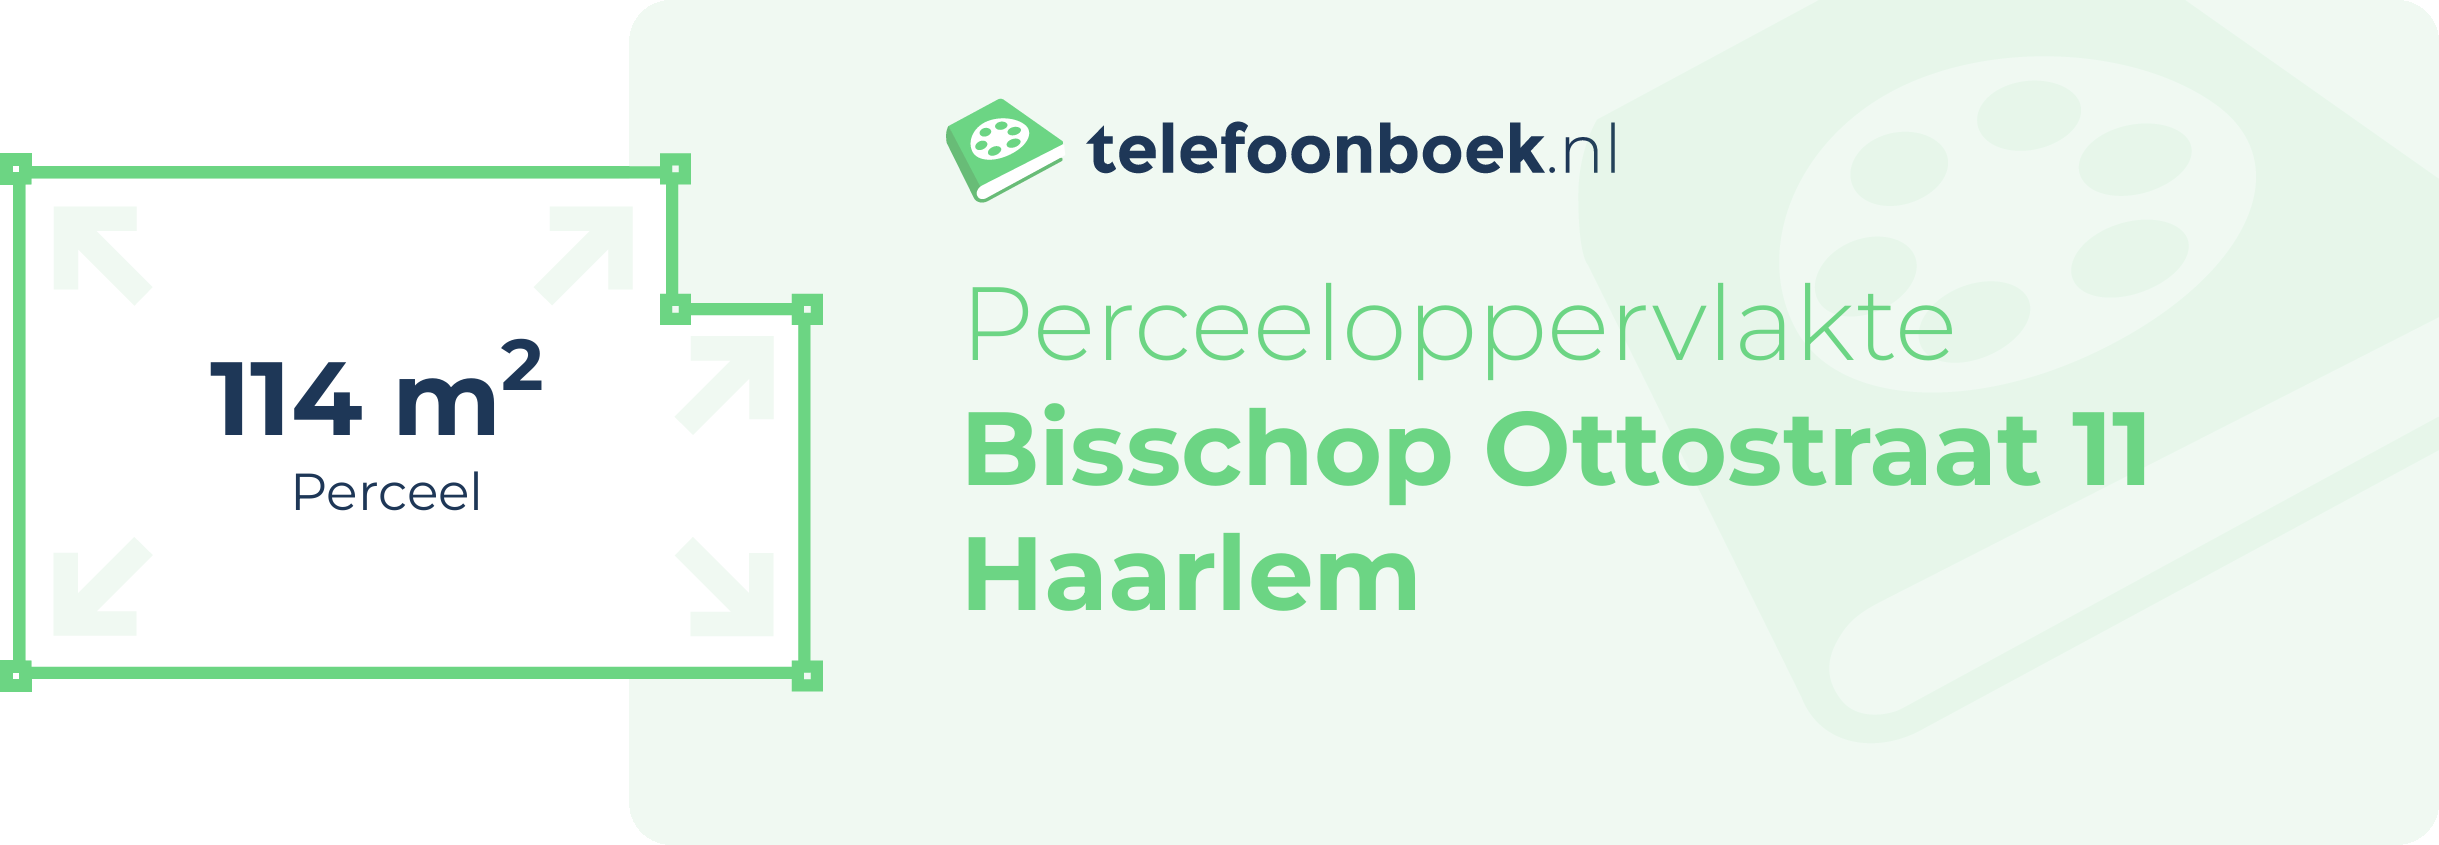 Perceeloppervlakte Bisschop Ottostraat 11 Haarlem